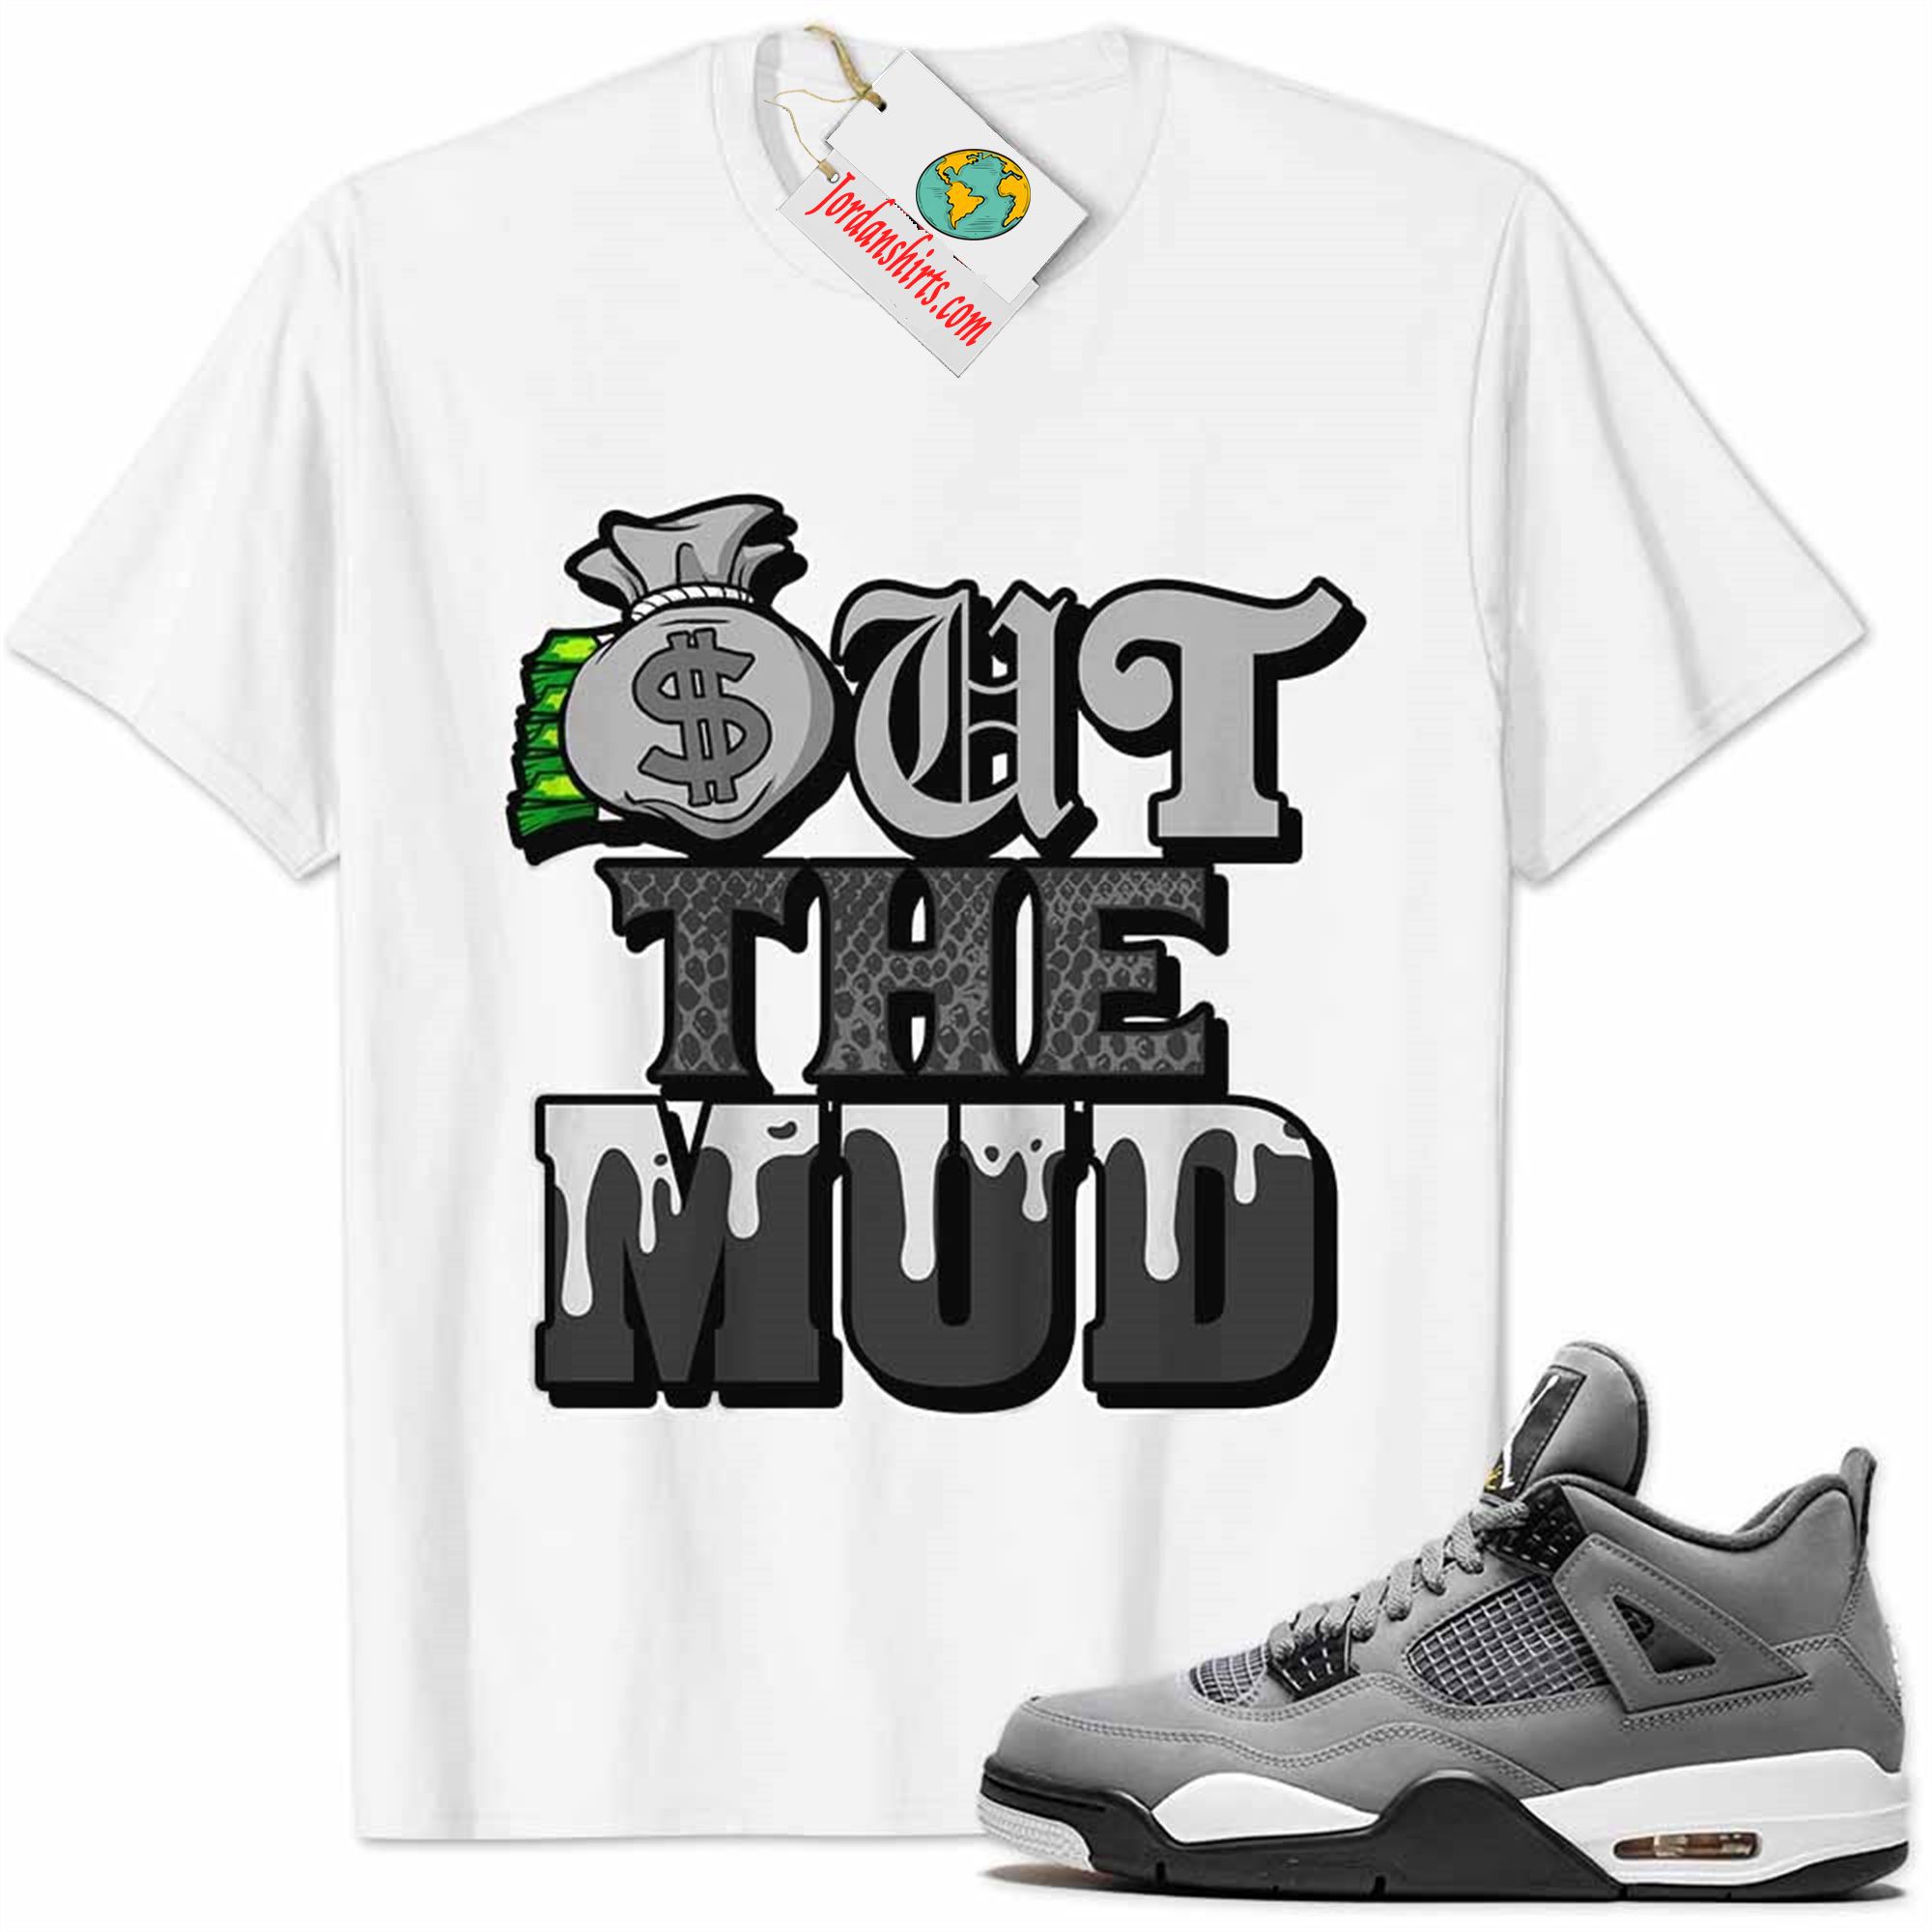 Jordan 4 Shirt, Jordan 4 Cool Grey Shirt Out The Mud Money Bag White Full Size Up To 5xl